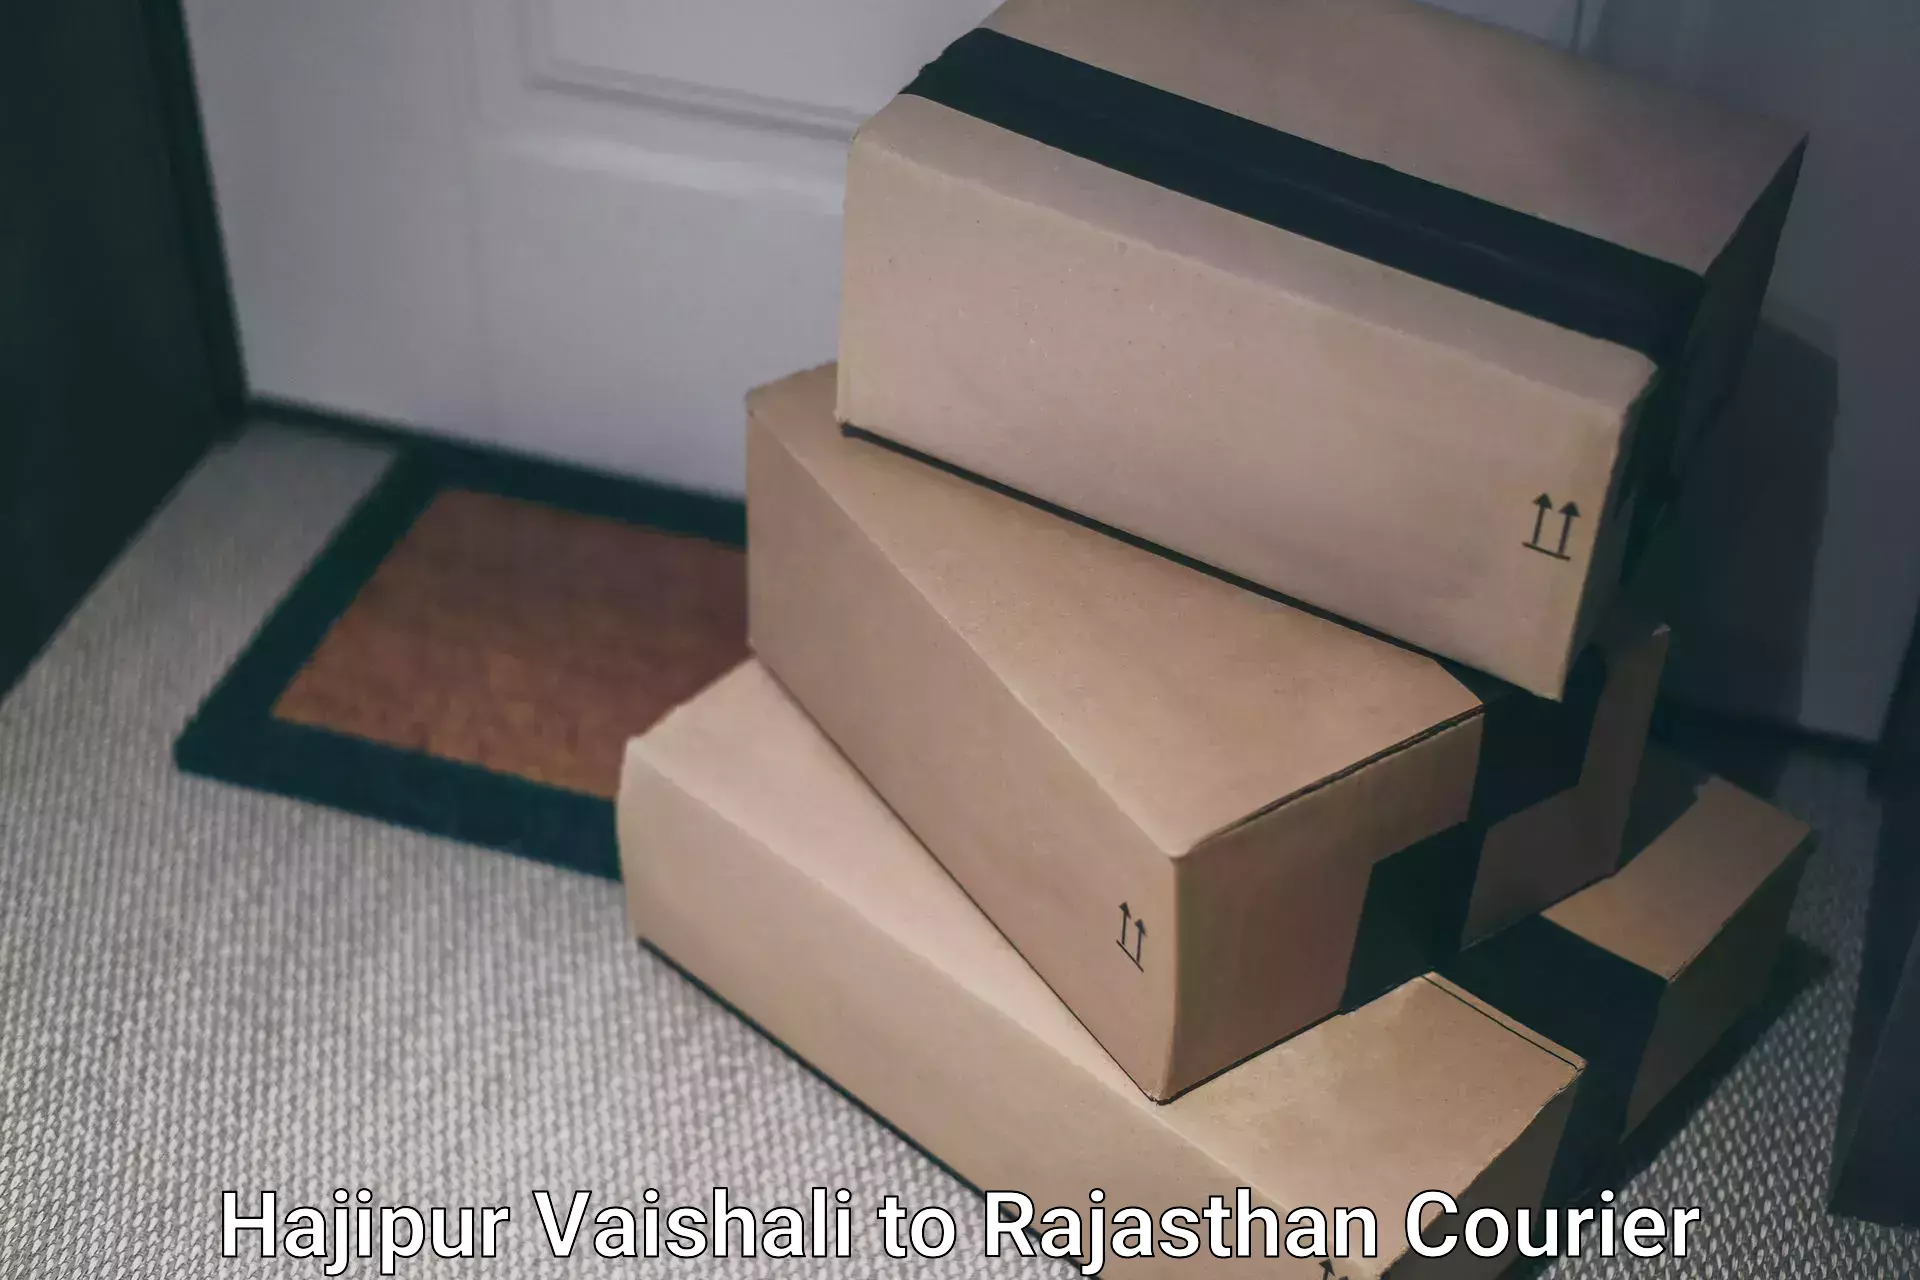 Affordable parcel service Hajipur Vaishali to Sikar